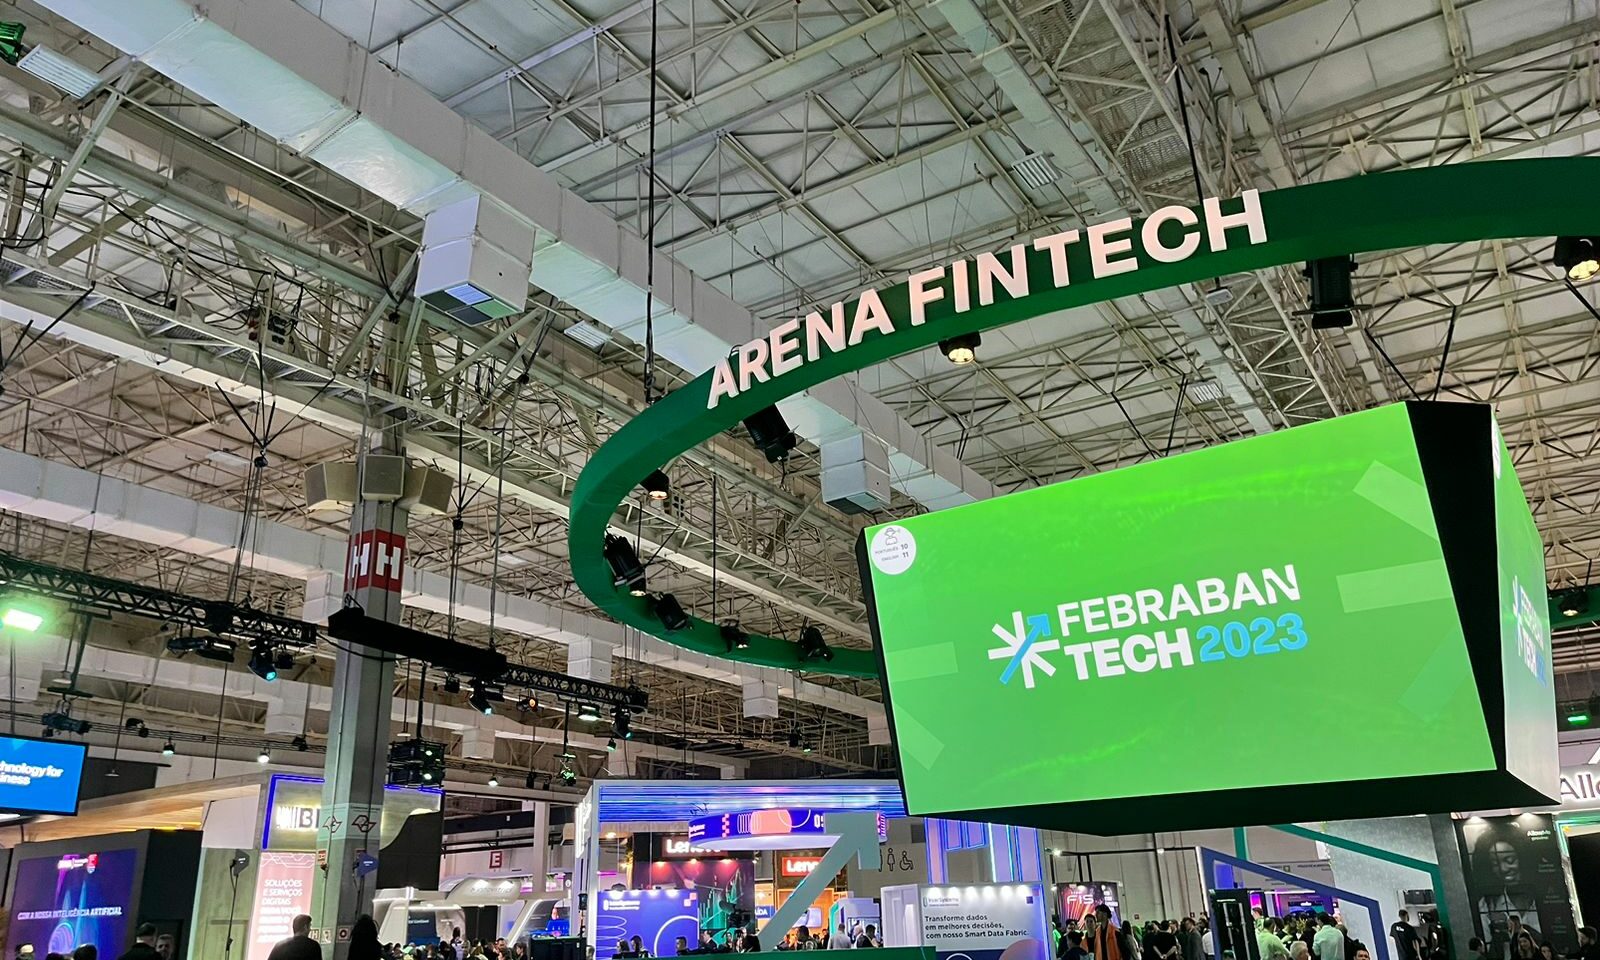 Febraban Tech 2023 conheça as tendências apresentadas FESA Group